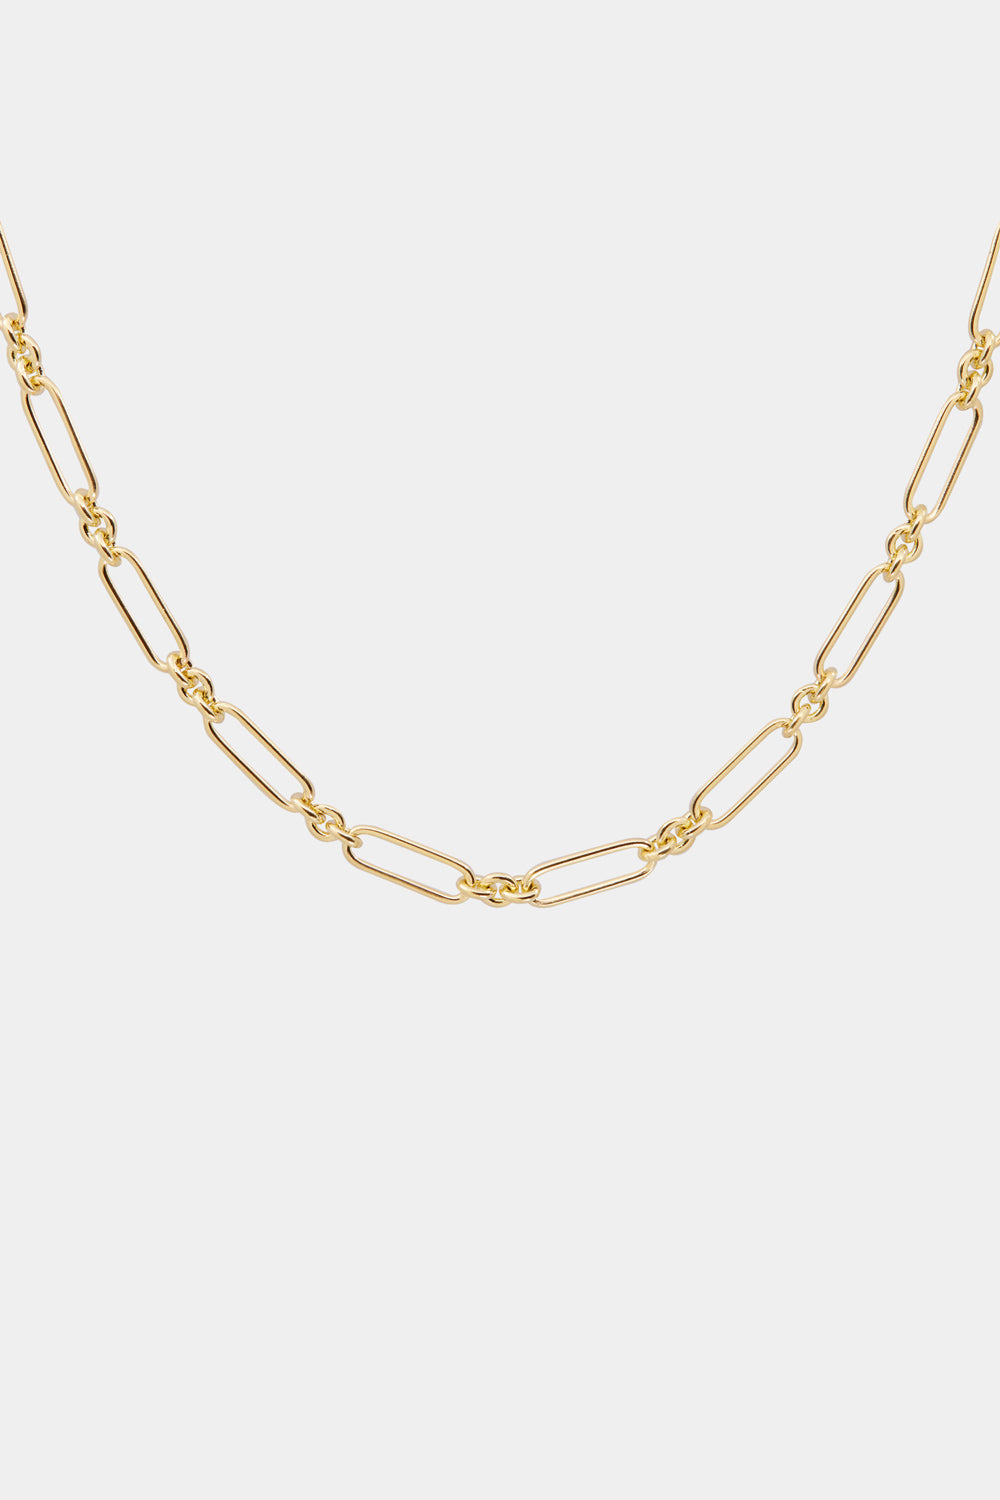 Mini Lennox Necklace | Gold, More Options Available| Natasha Schweitzer